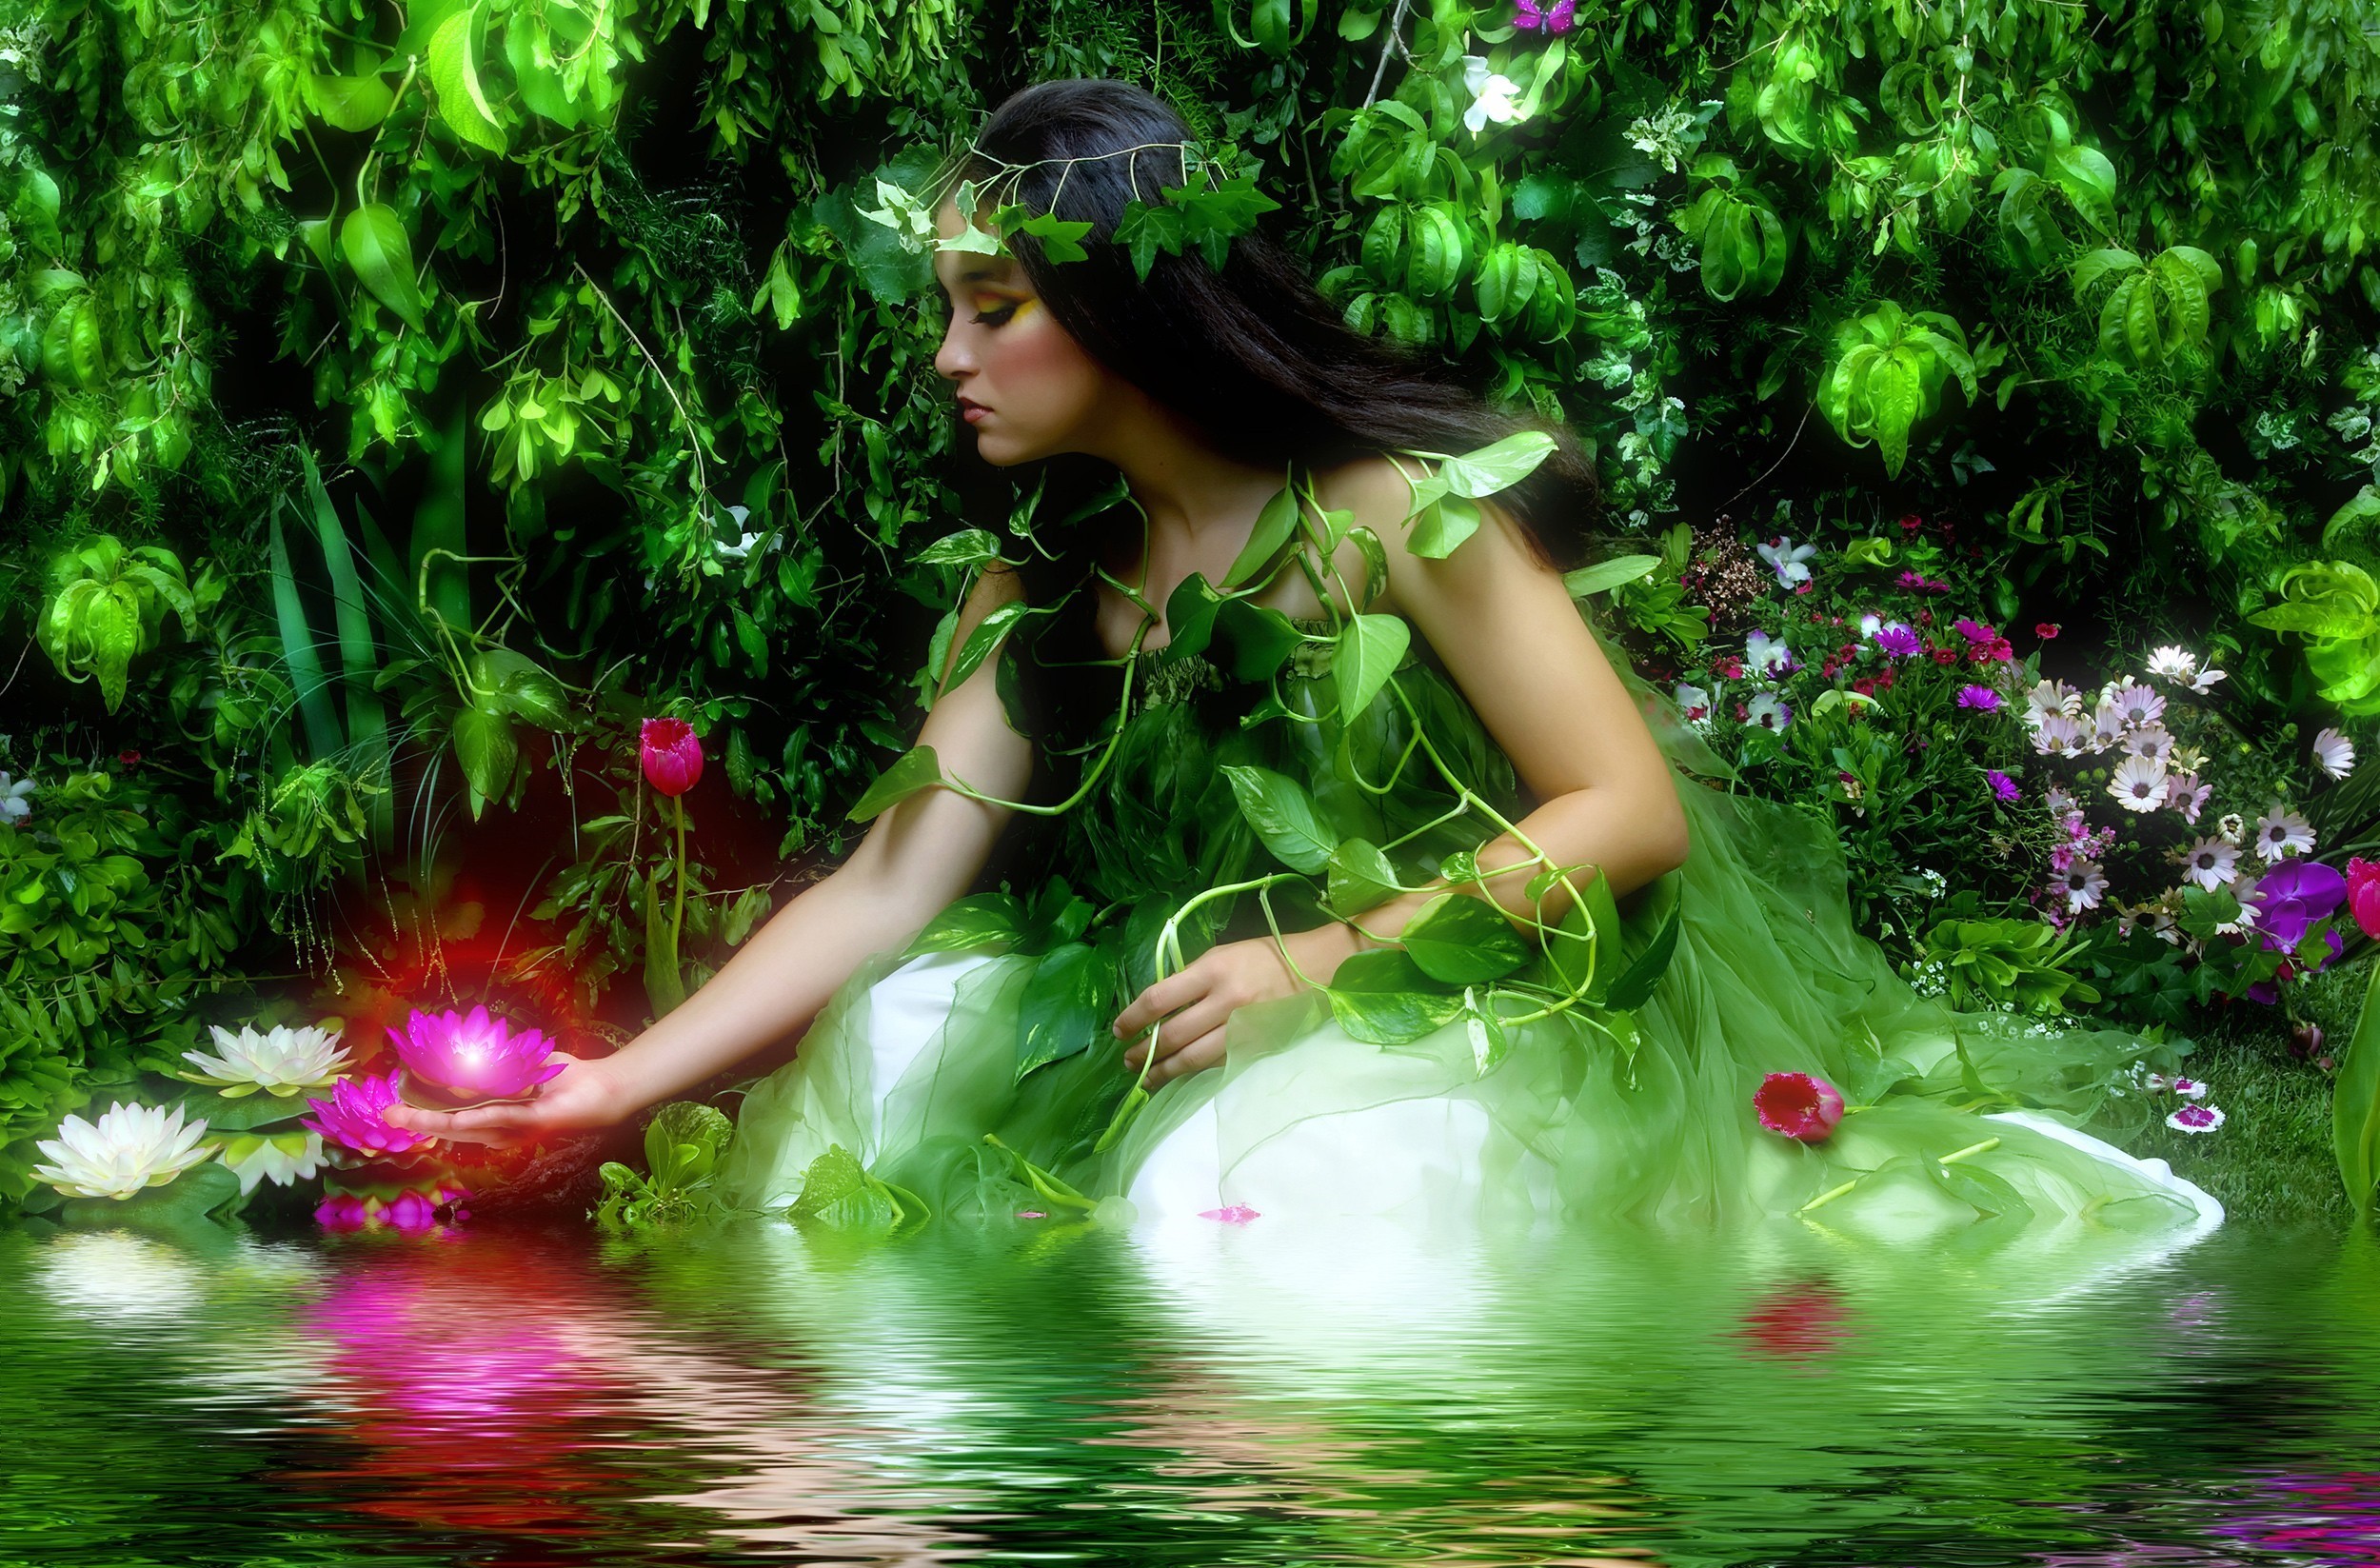 fairy, makeup, fantasy, brunette, flower, leaf, pond, spring, water lily